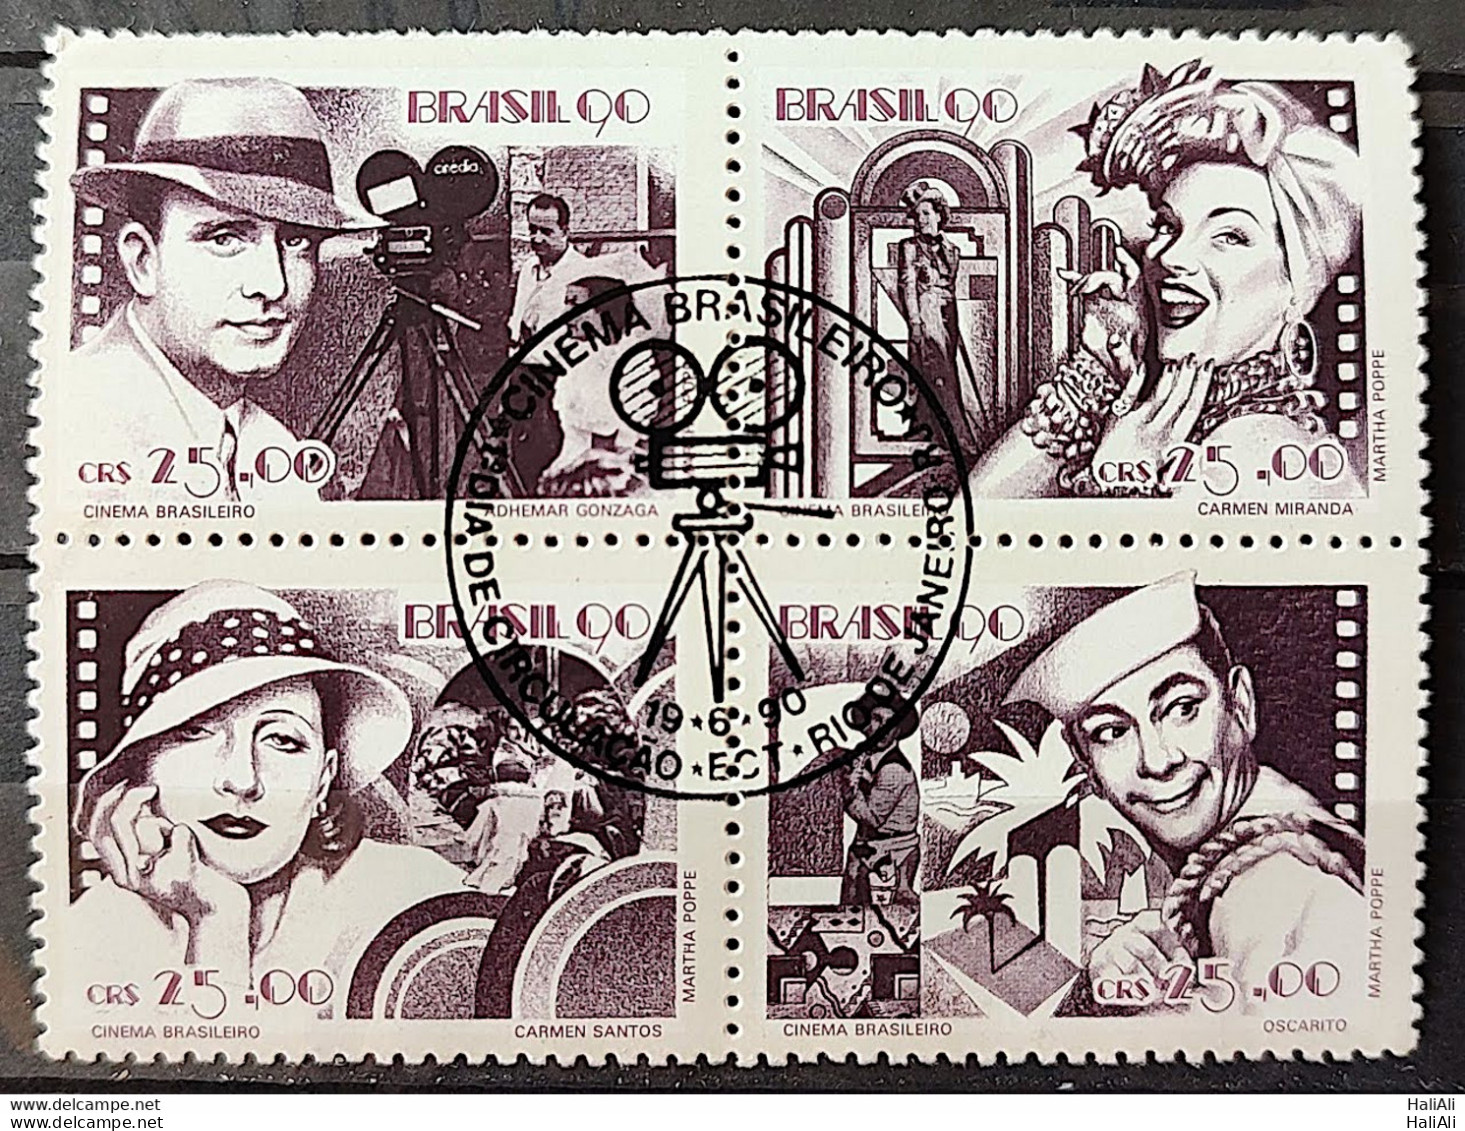 C 1687 Brazil Stamp Brazilian Cinema Gonzaga Carmen Miranda Occarito 1990 Complete Series CBC RJ - Neufs